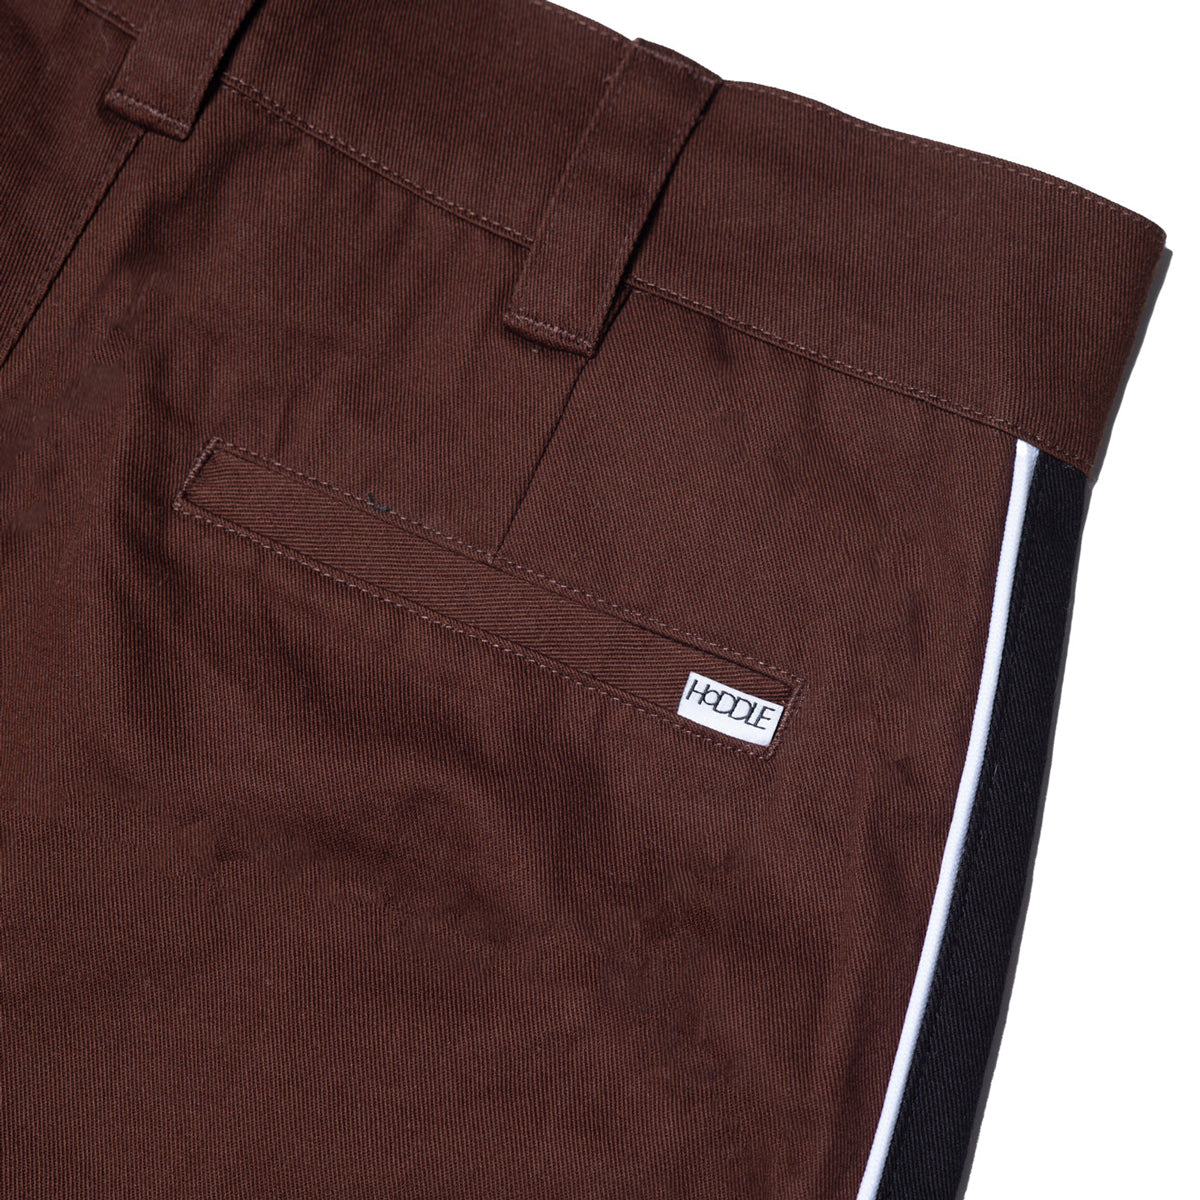 Hoddle Bermuda Shorts - Chocolate/Black image 4